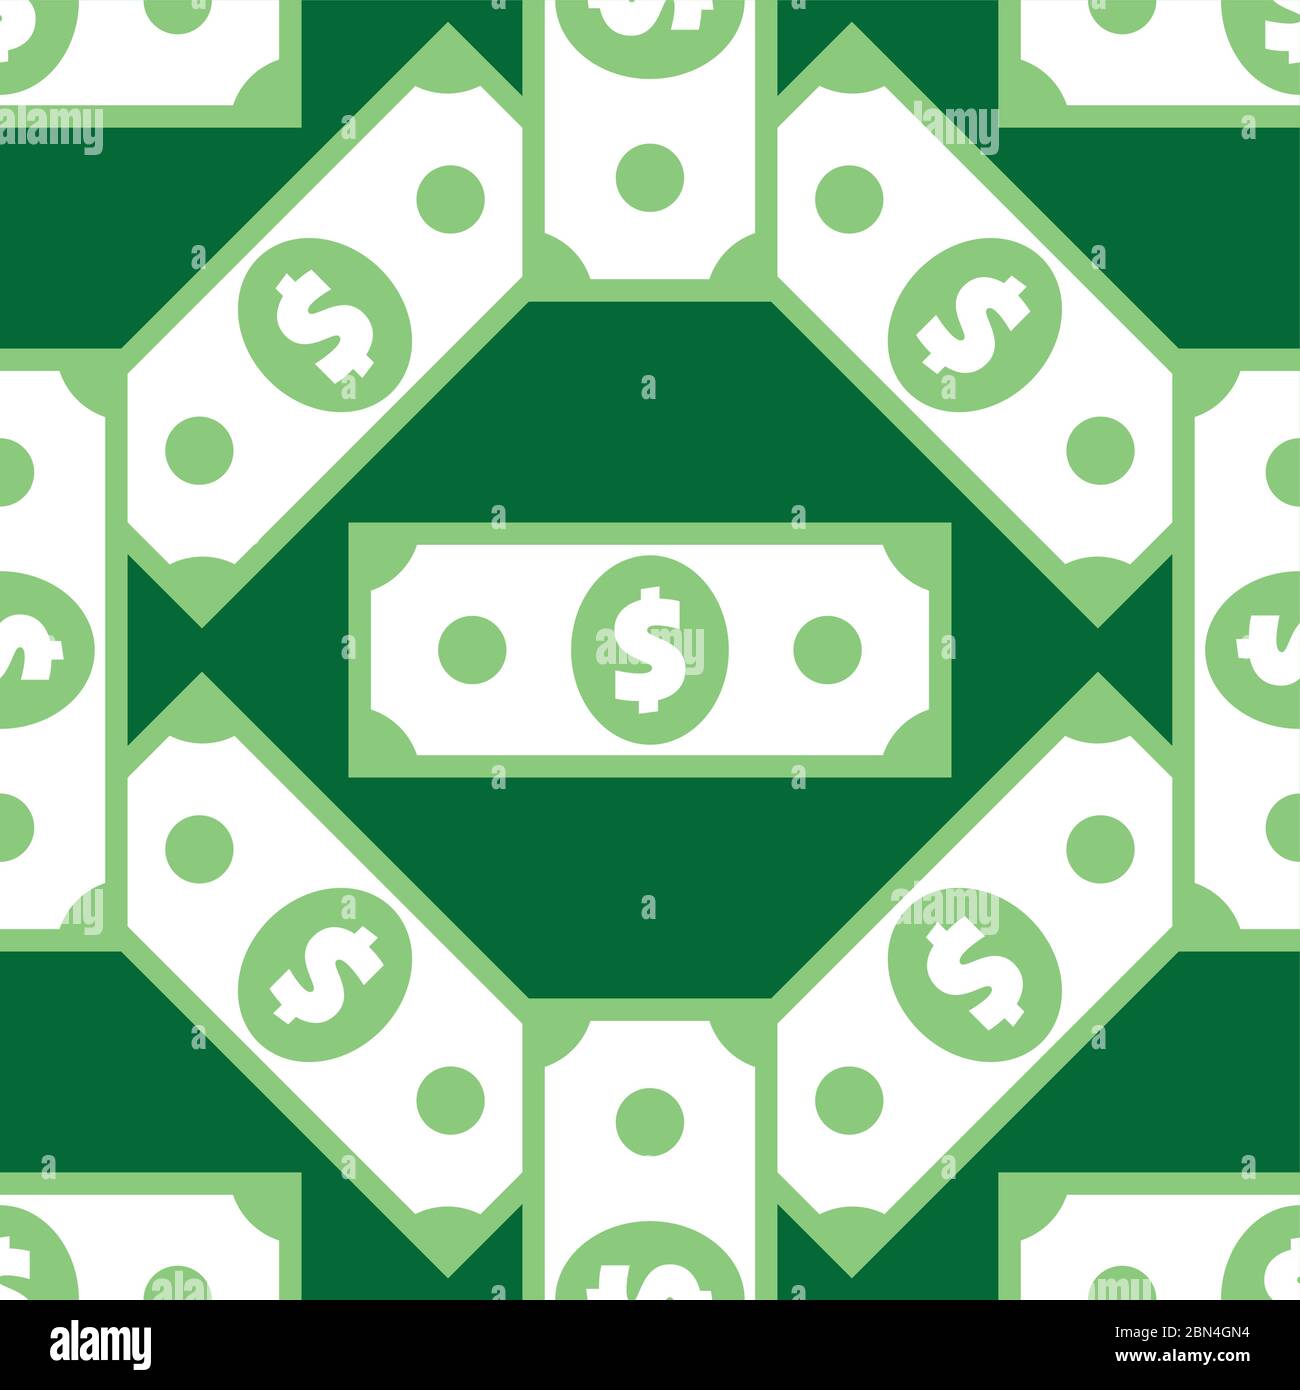 Modello senza giunture per banconote in dollari. American bucks struttura astratta. Sfondo a capo con simboli di valuta USA ricorrenti in verde. Stilizzazione verde Illustrazione Vettoriale